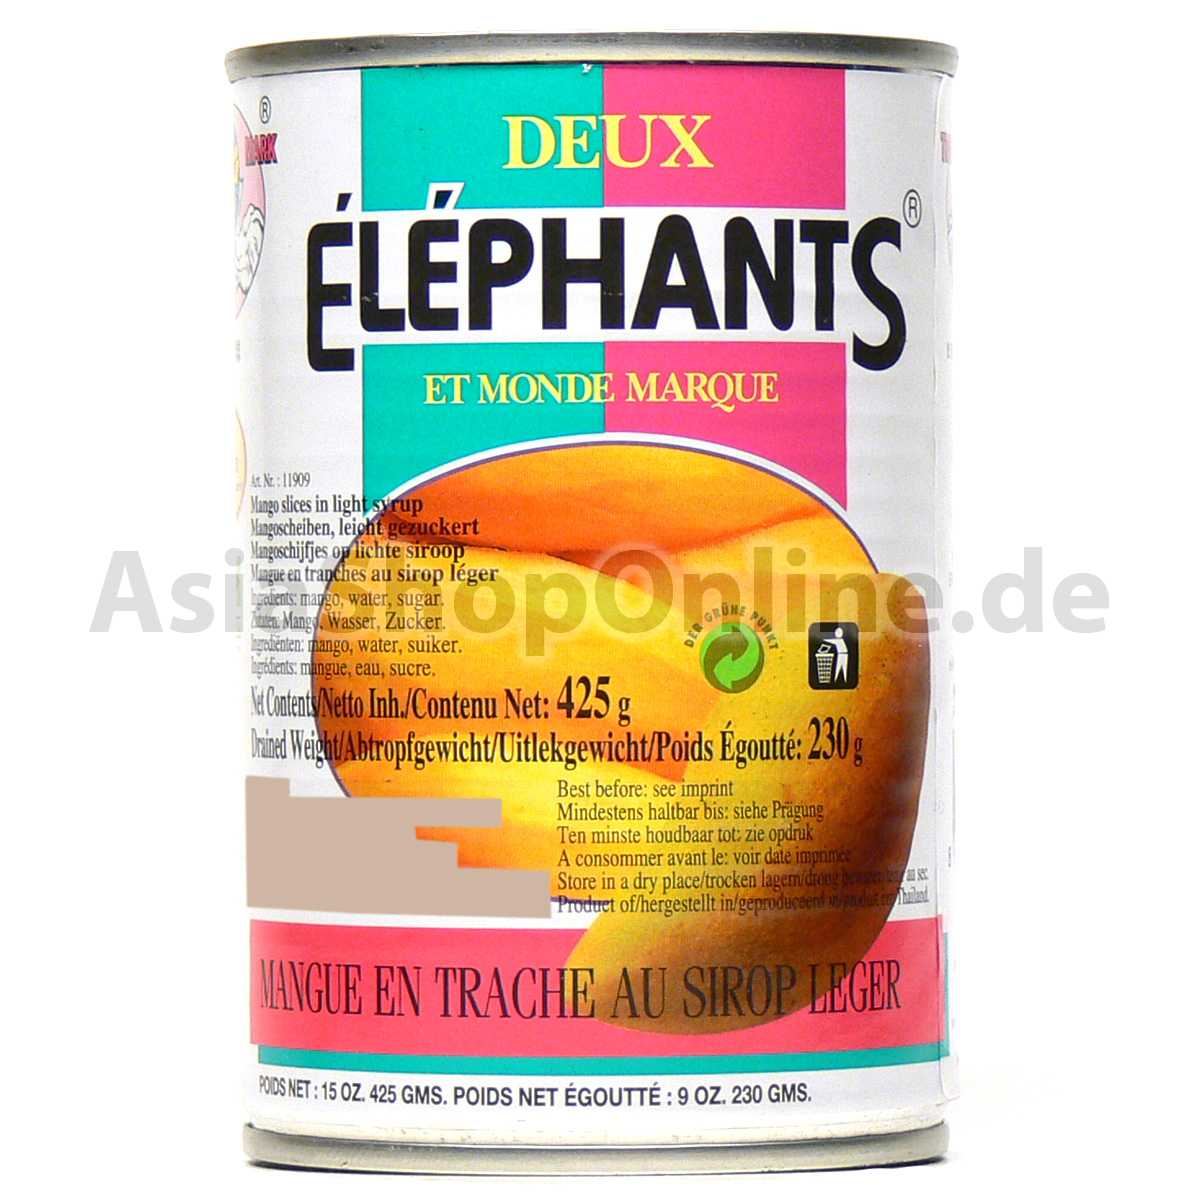 Mangoscheiben leicht gezuckert - Twin Elephants - 230g